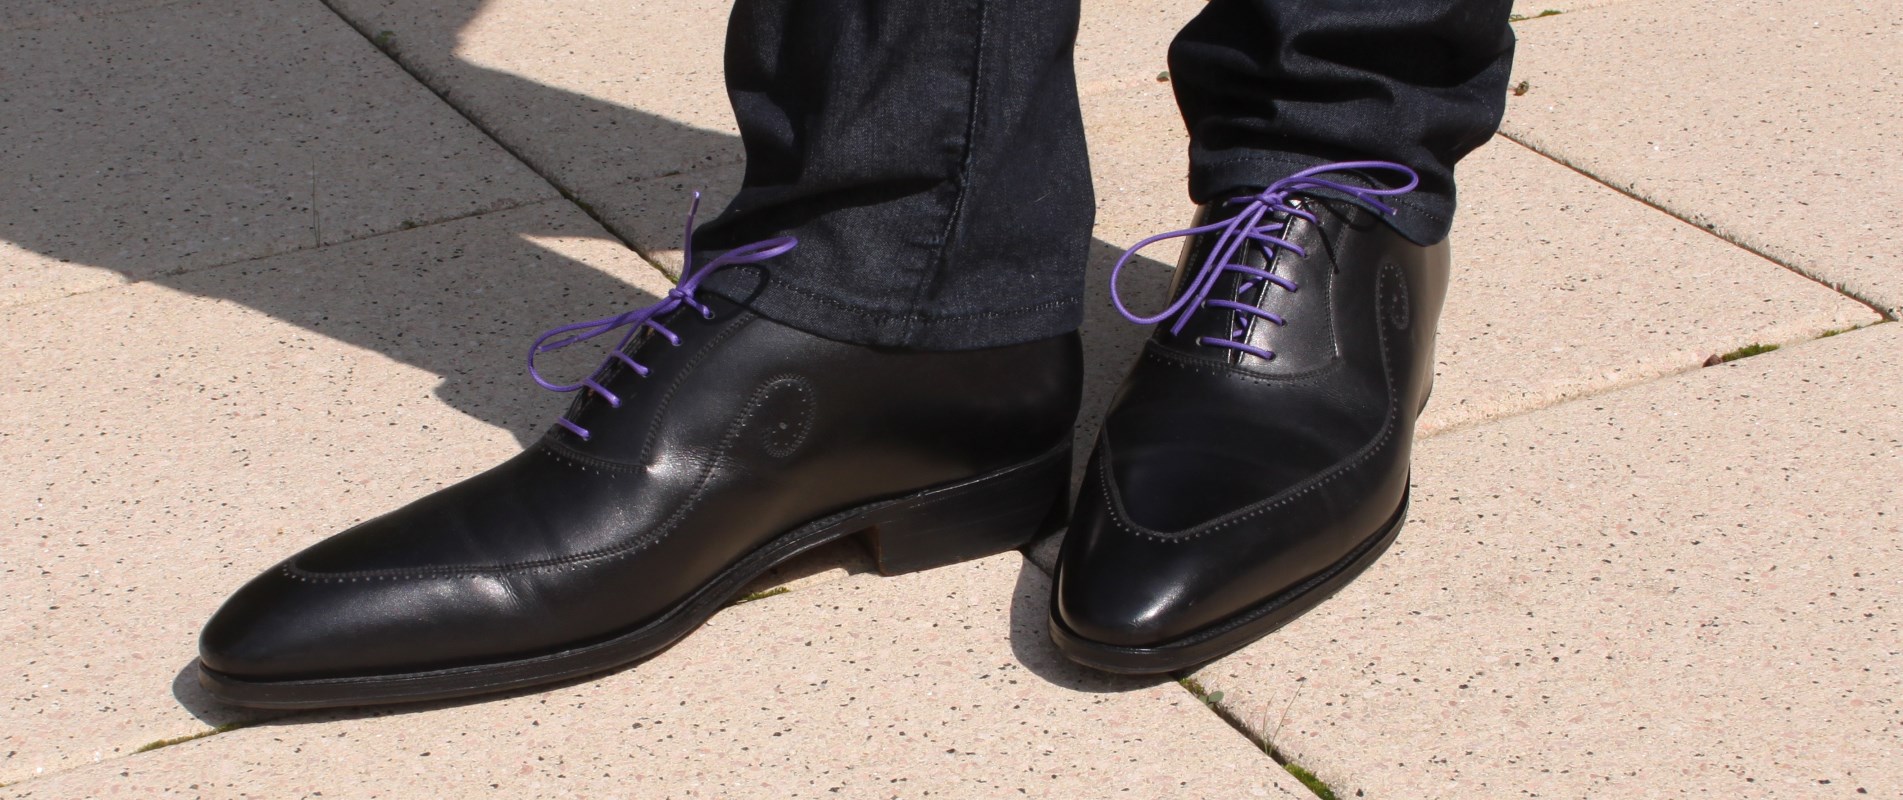 Chaussures Chaussures basses Chaussures à lacets Fratelli rossetti Chaussures \u00e0 lacets violet-noir gradient de couleur 